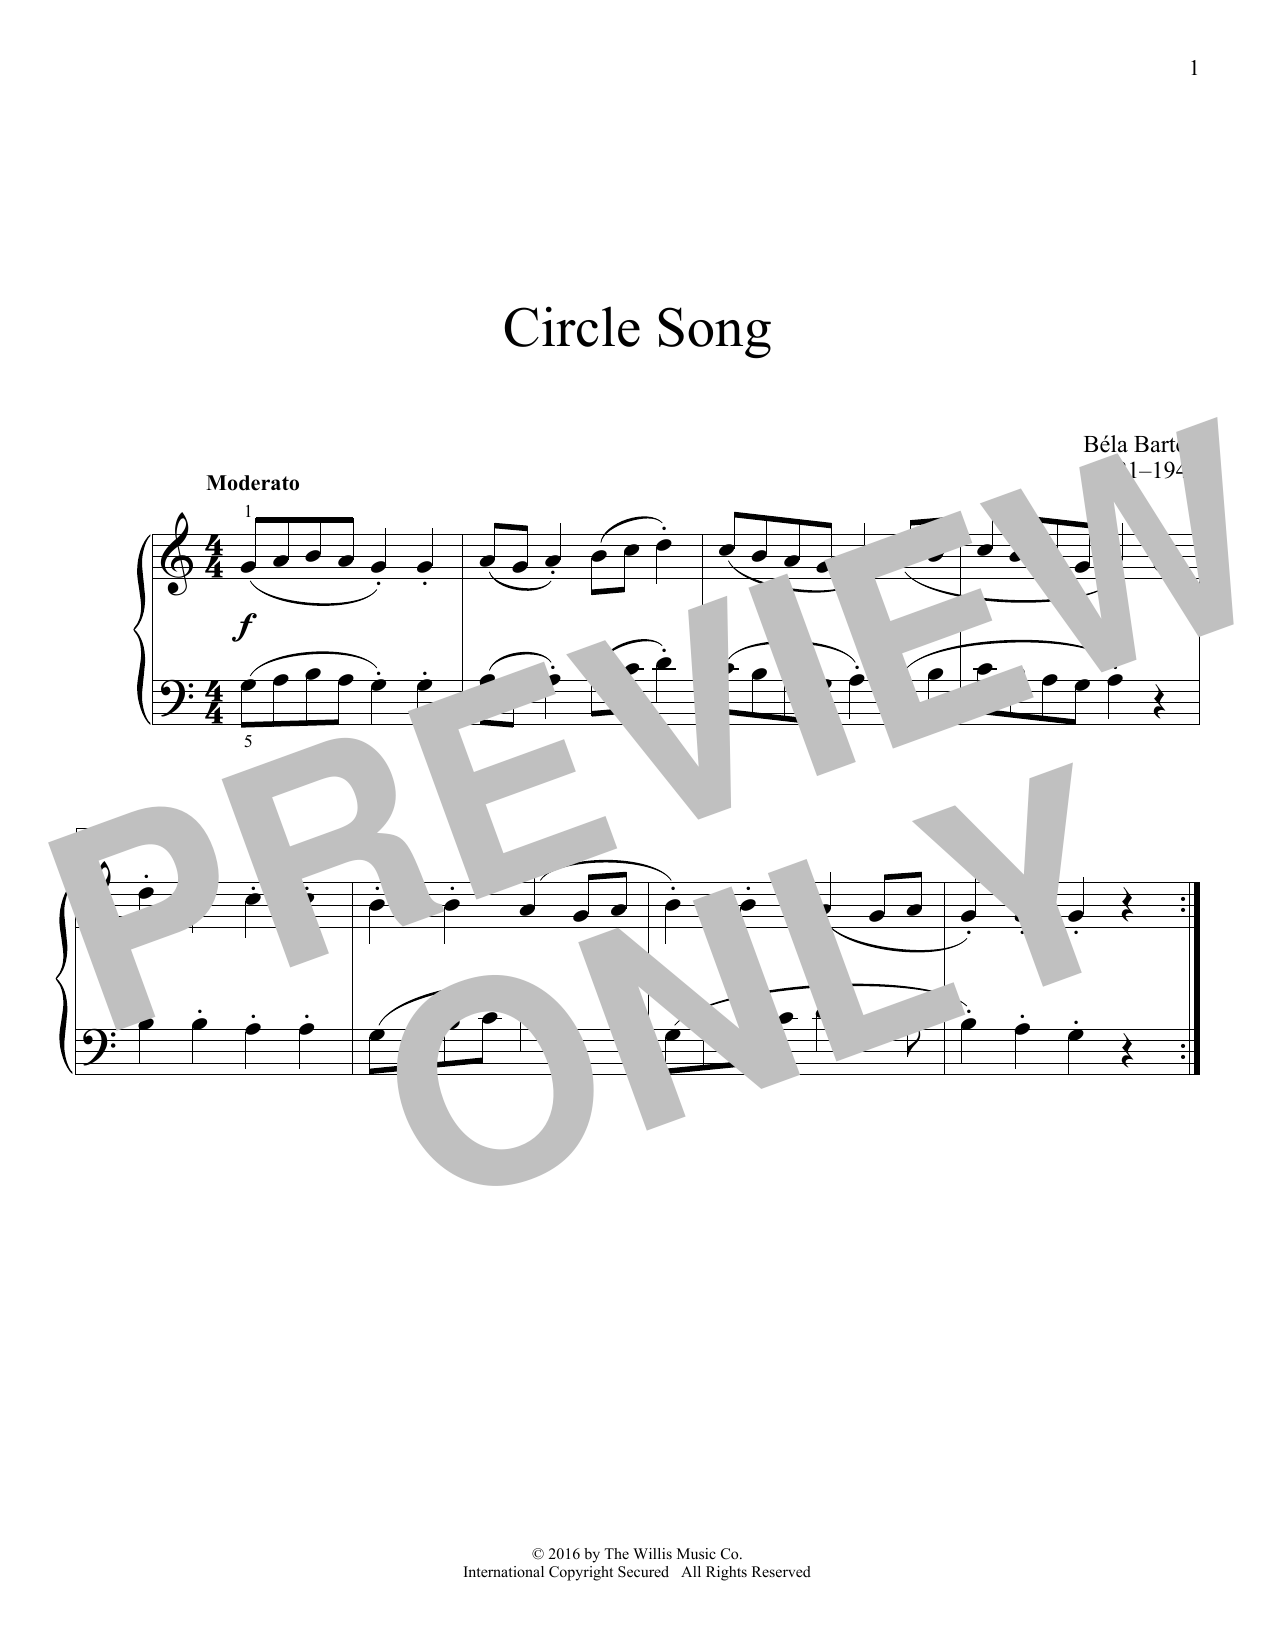 Download Bela Bartok Circle Song Sheet Music